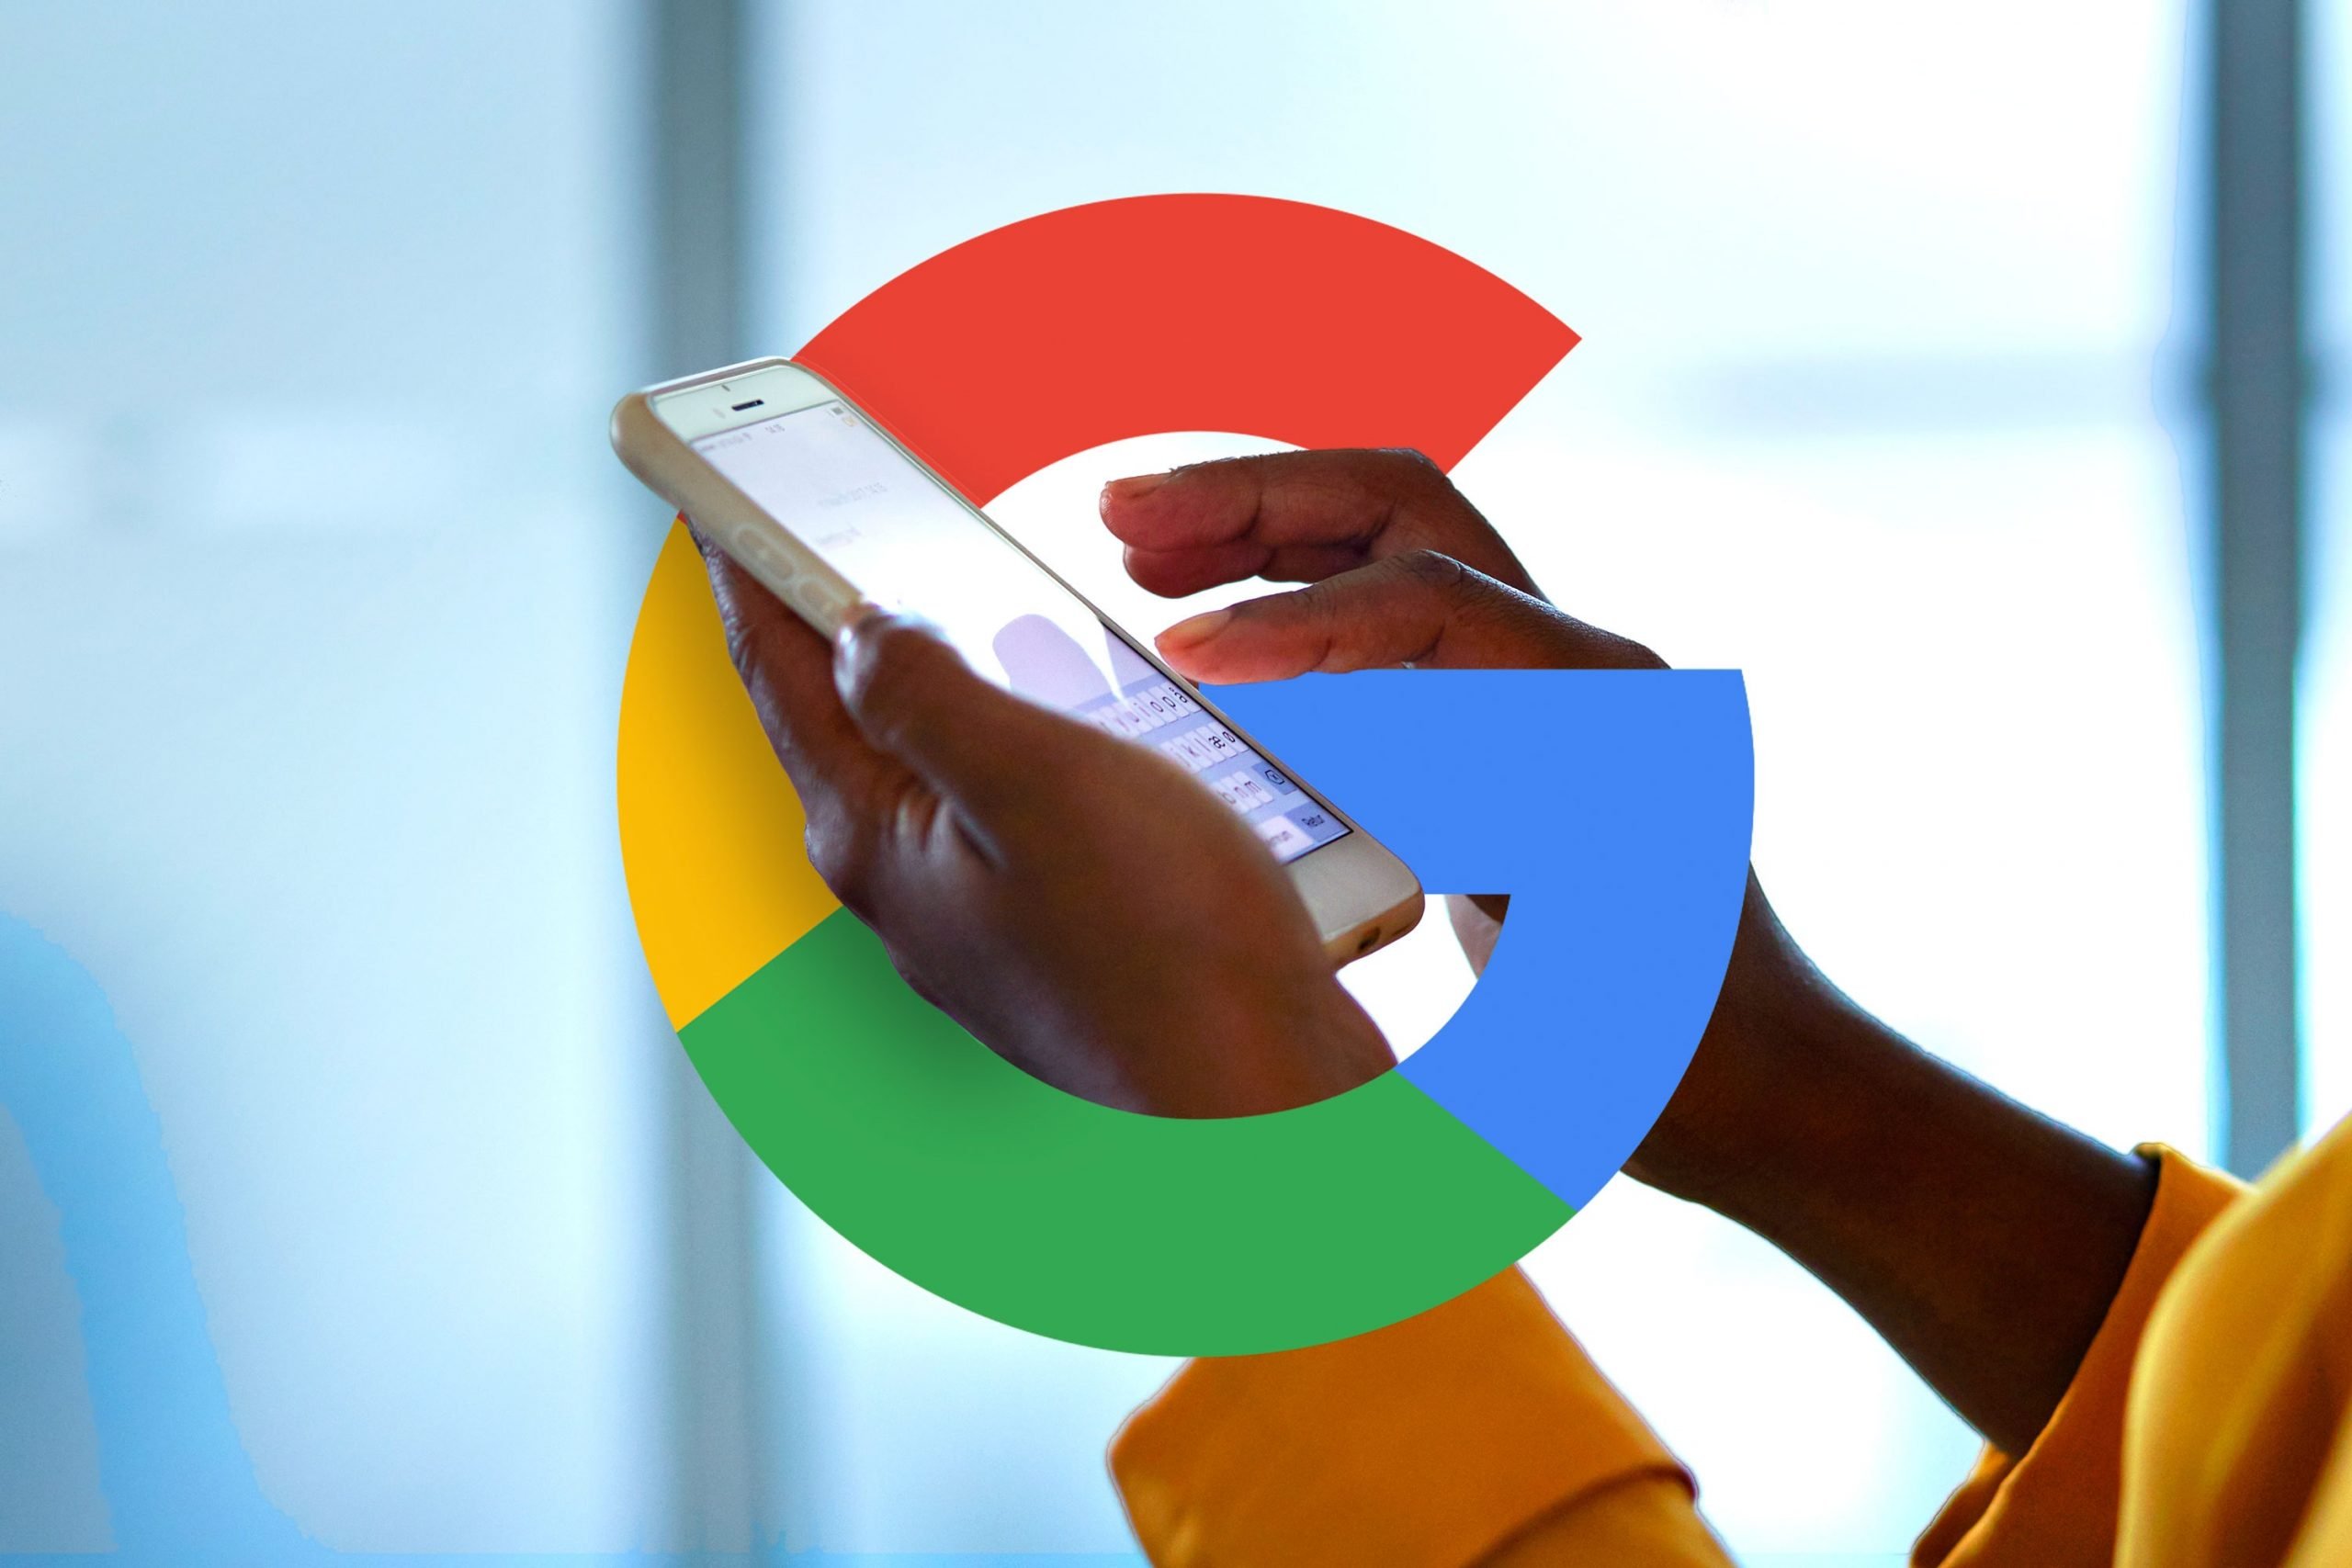 [Opgelost] Google heeft last van storing met onbereikbare diensten en sites